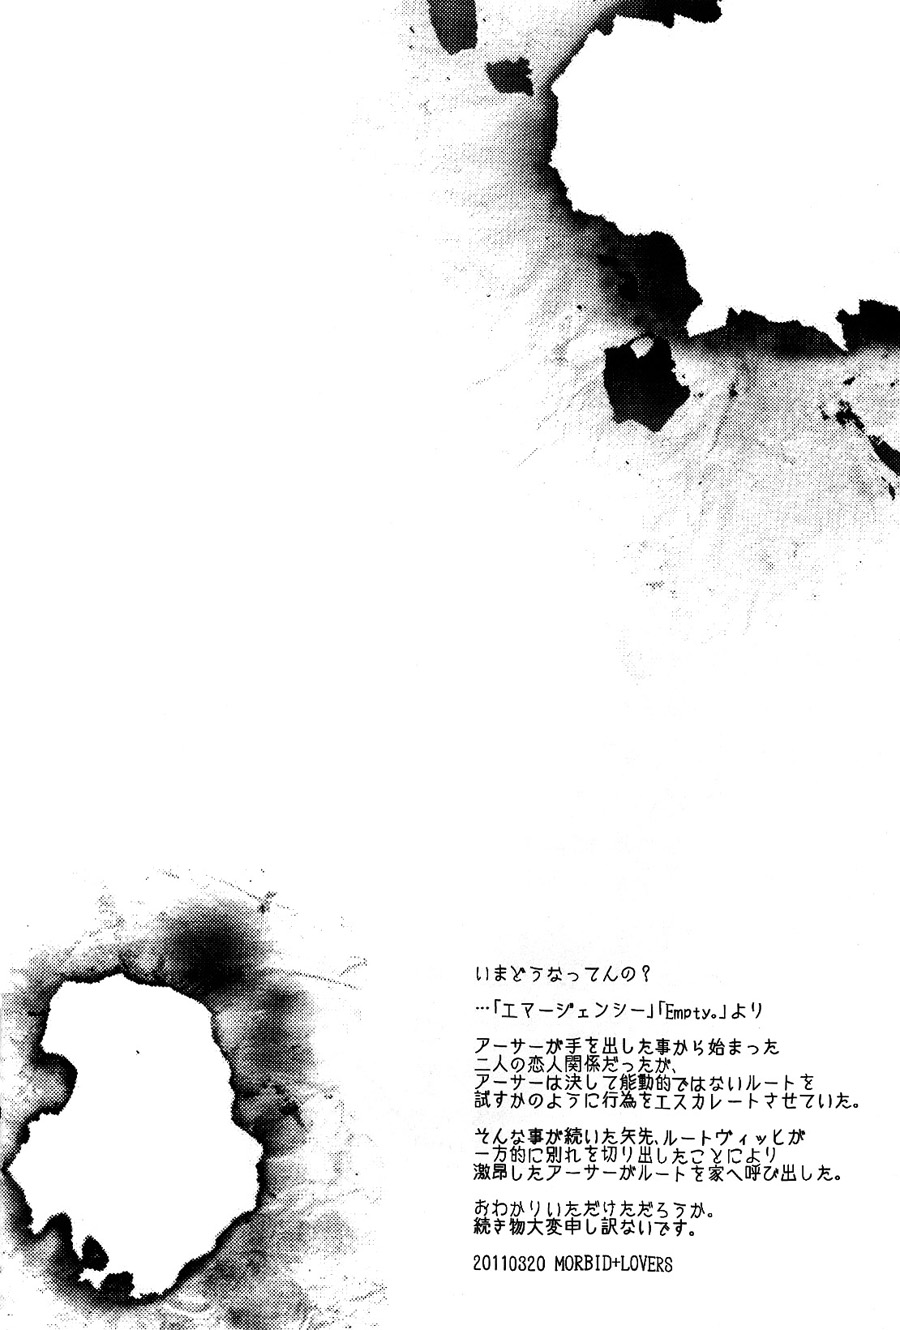 Shou ショウ Morbid+Lovers Show Hetalia ヘタリア Escapology UK x Germany